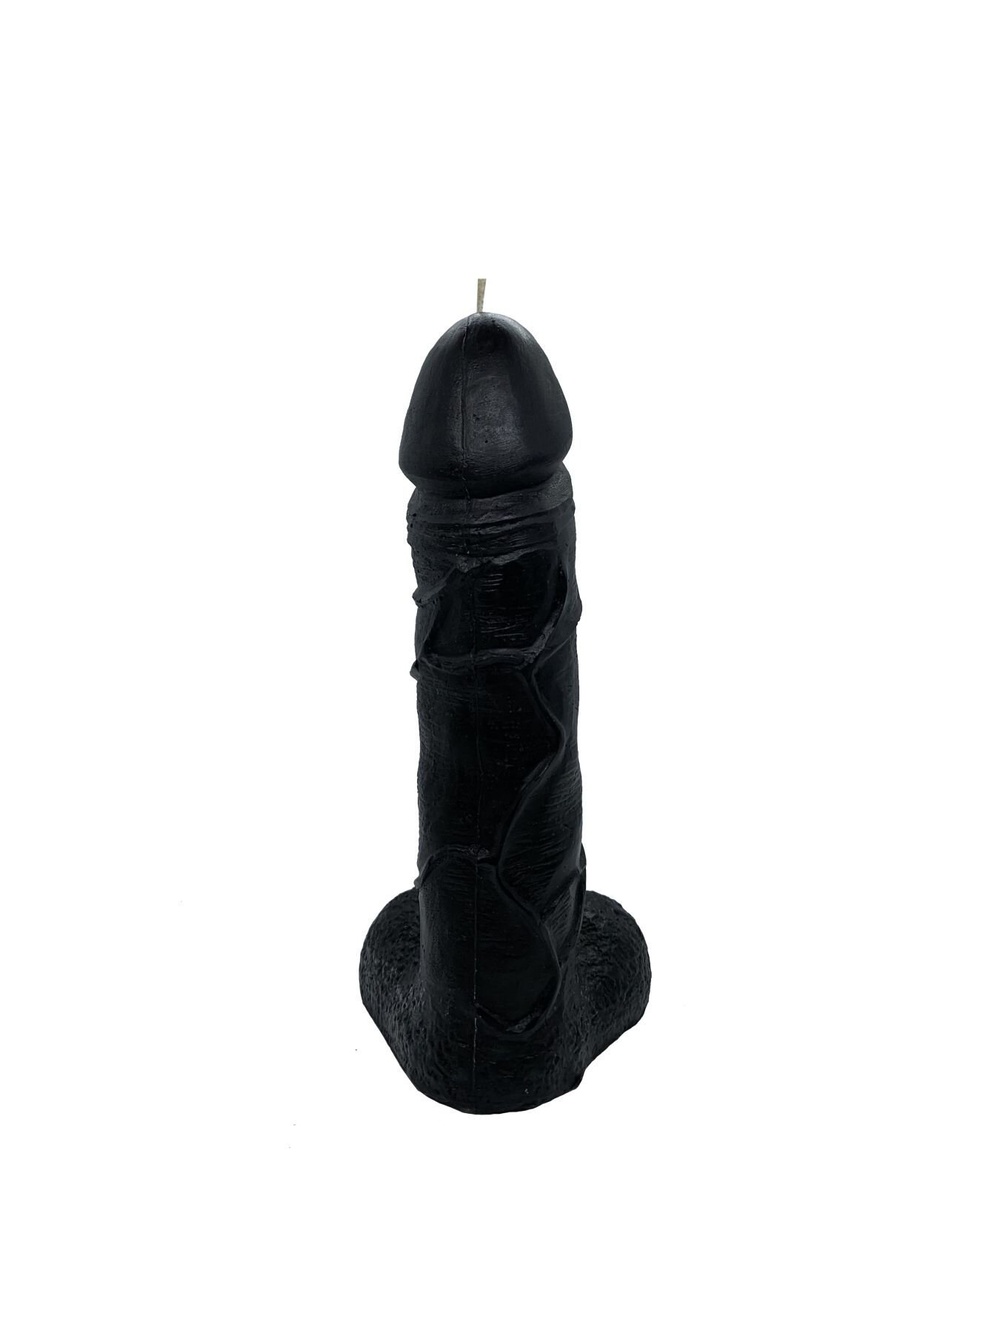 Свічка у вигляді члена Black size L, для збудливої атмосфери фото